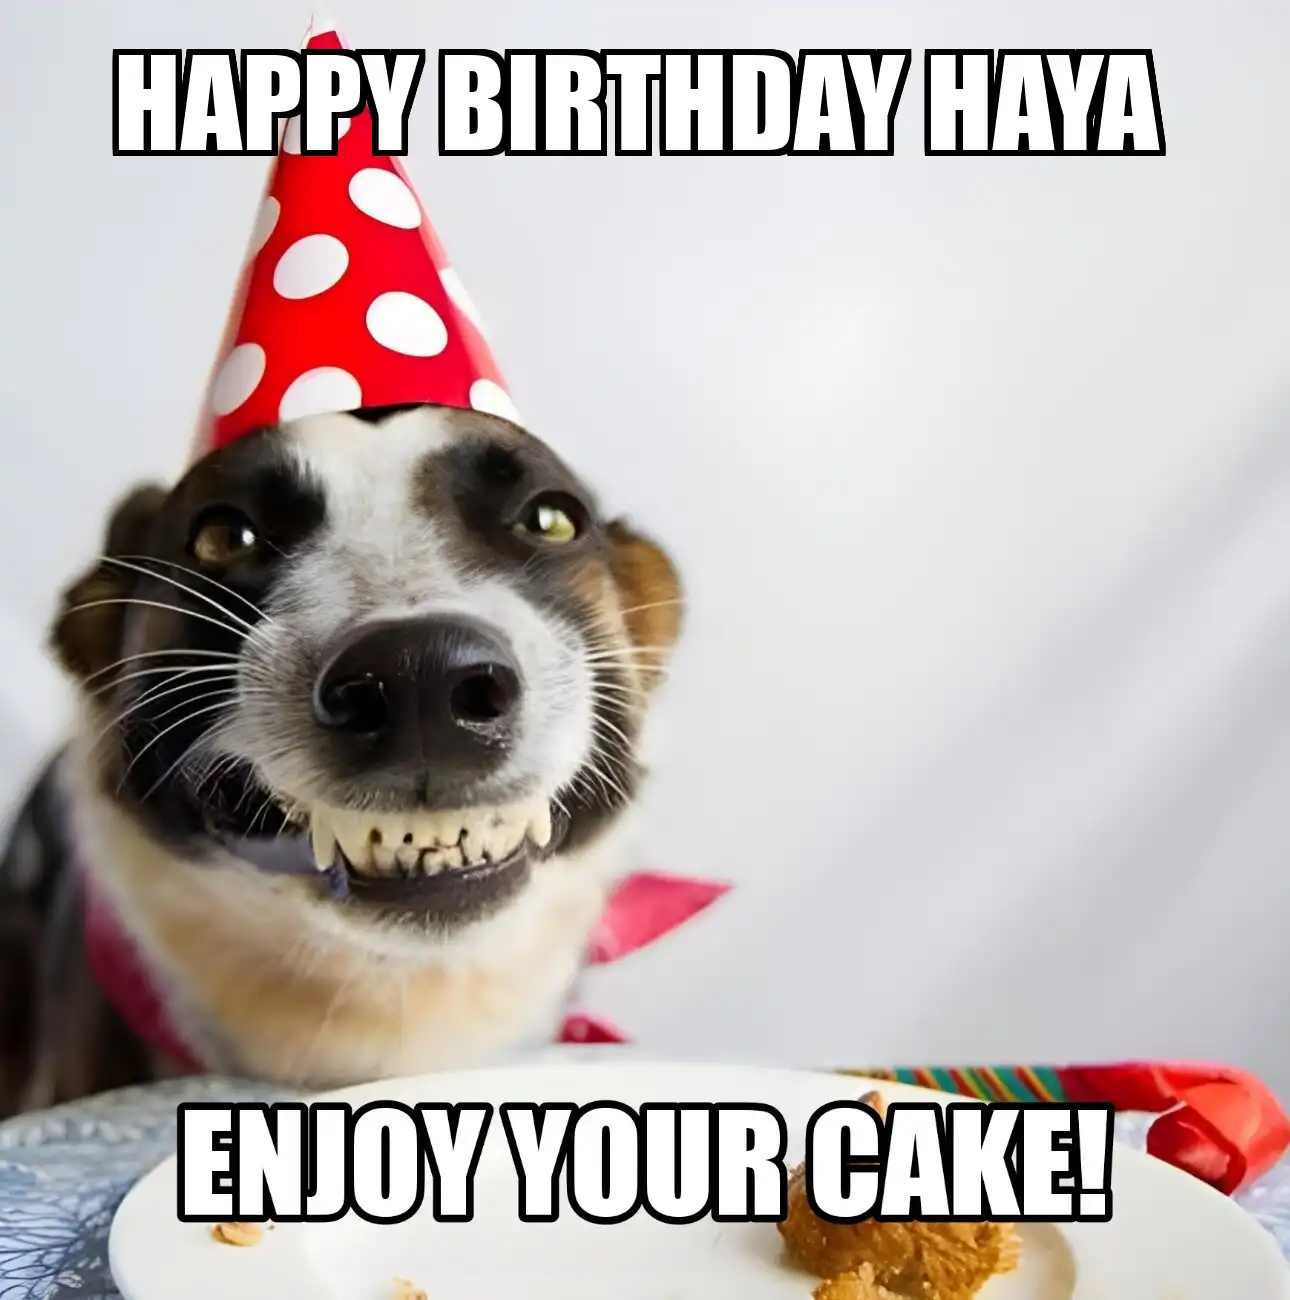 Happy Birthday Haya Enjoy Your Cake Dog Meme